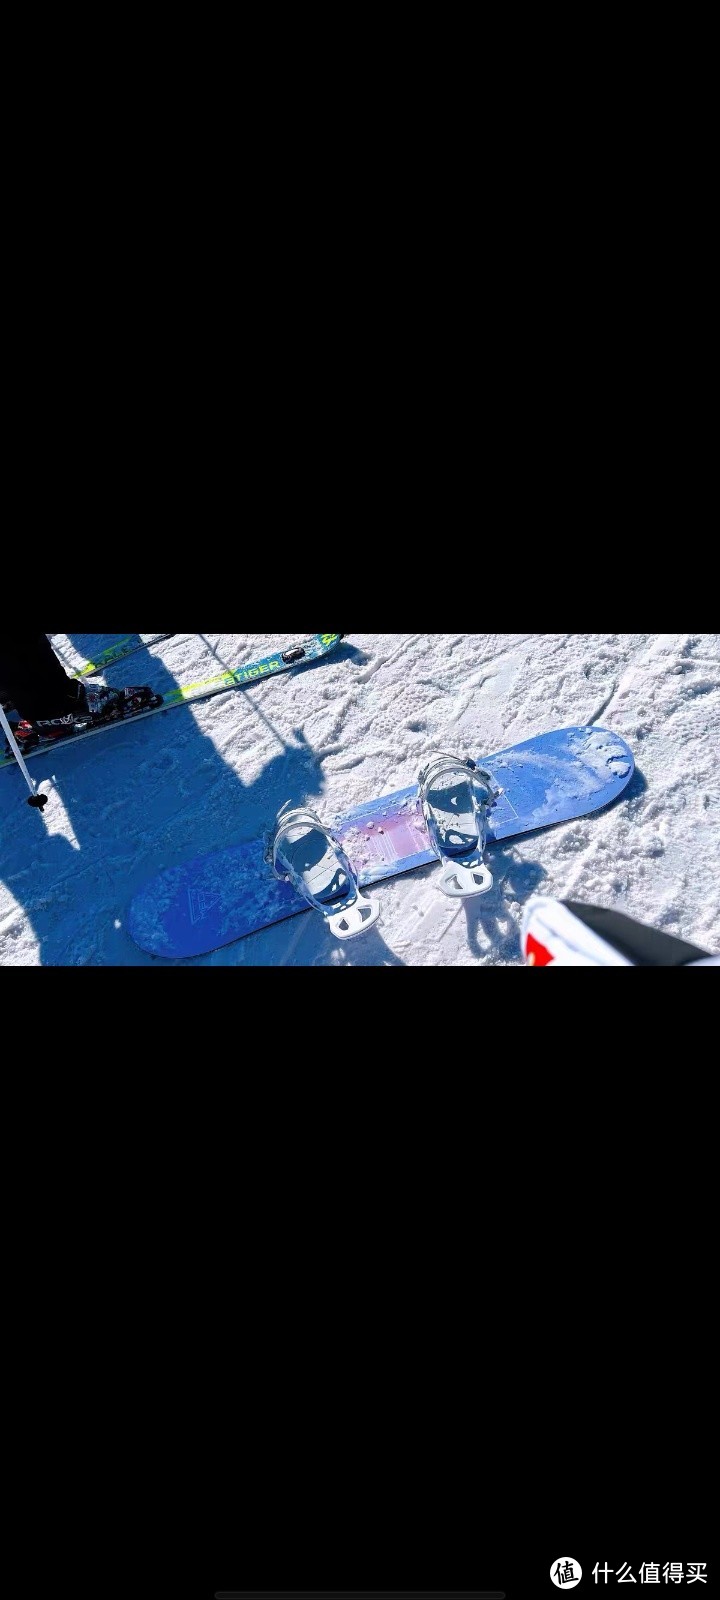 冬季滑雪者--滑雪单板